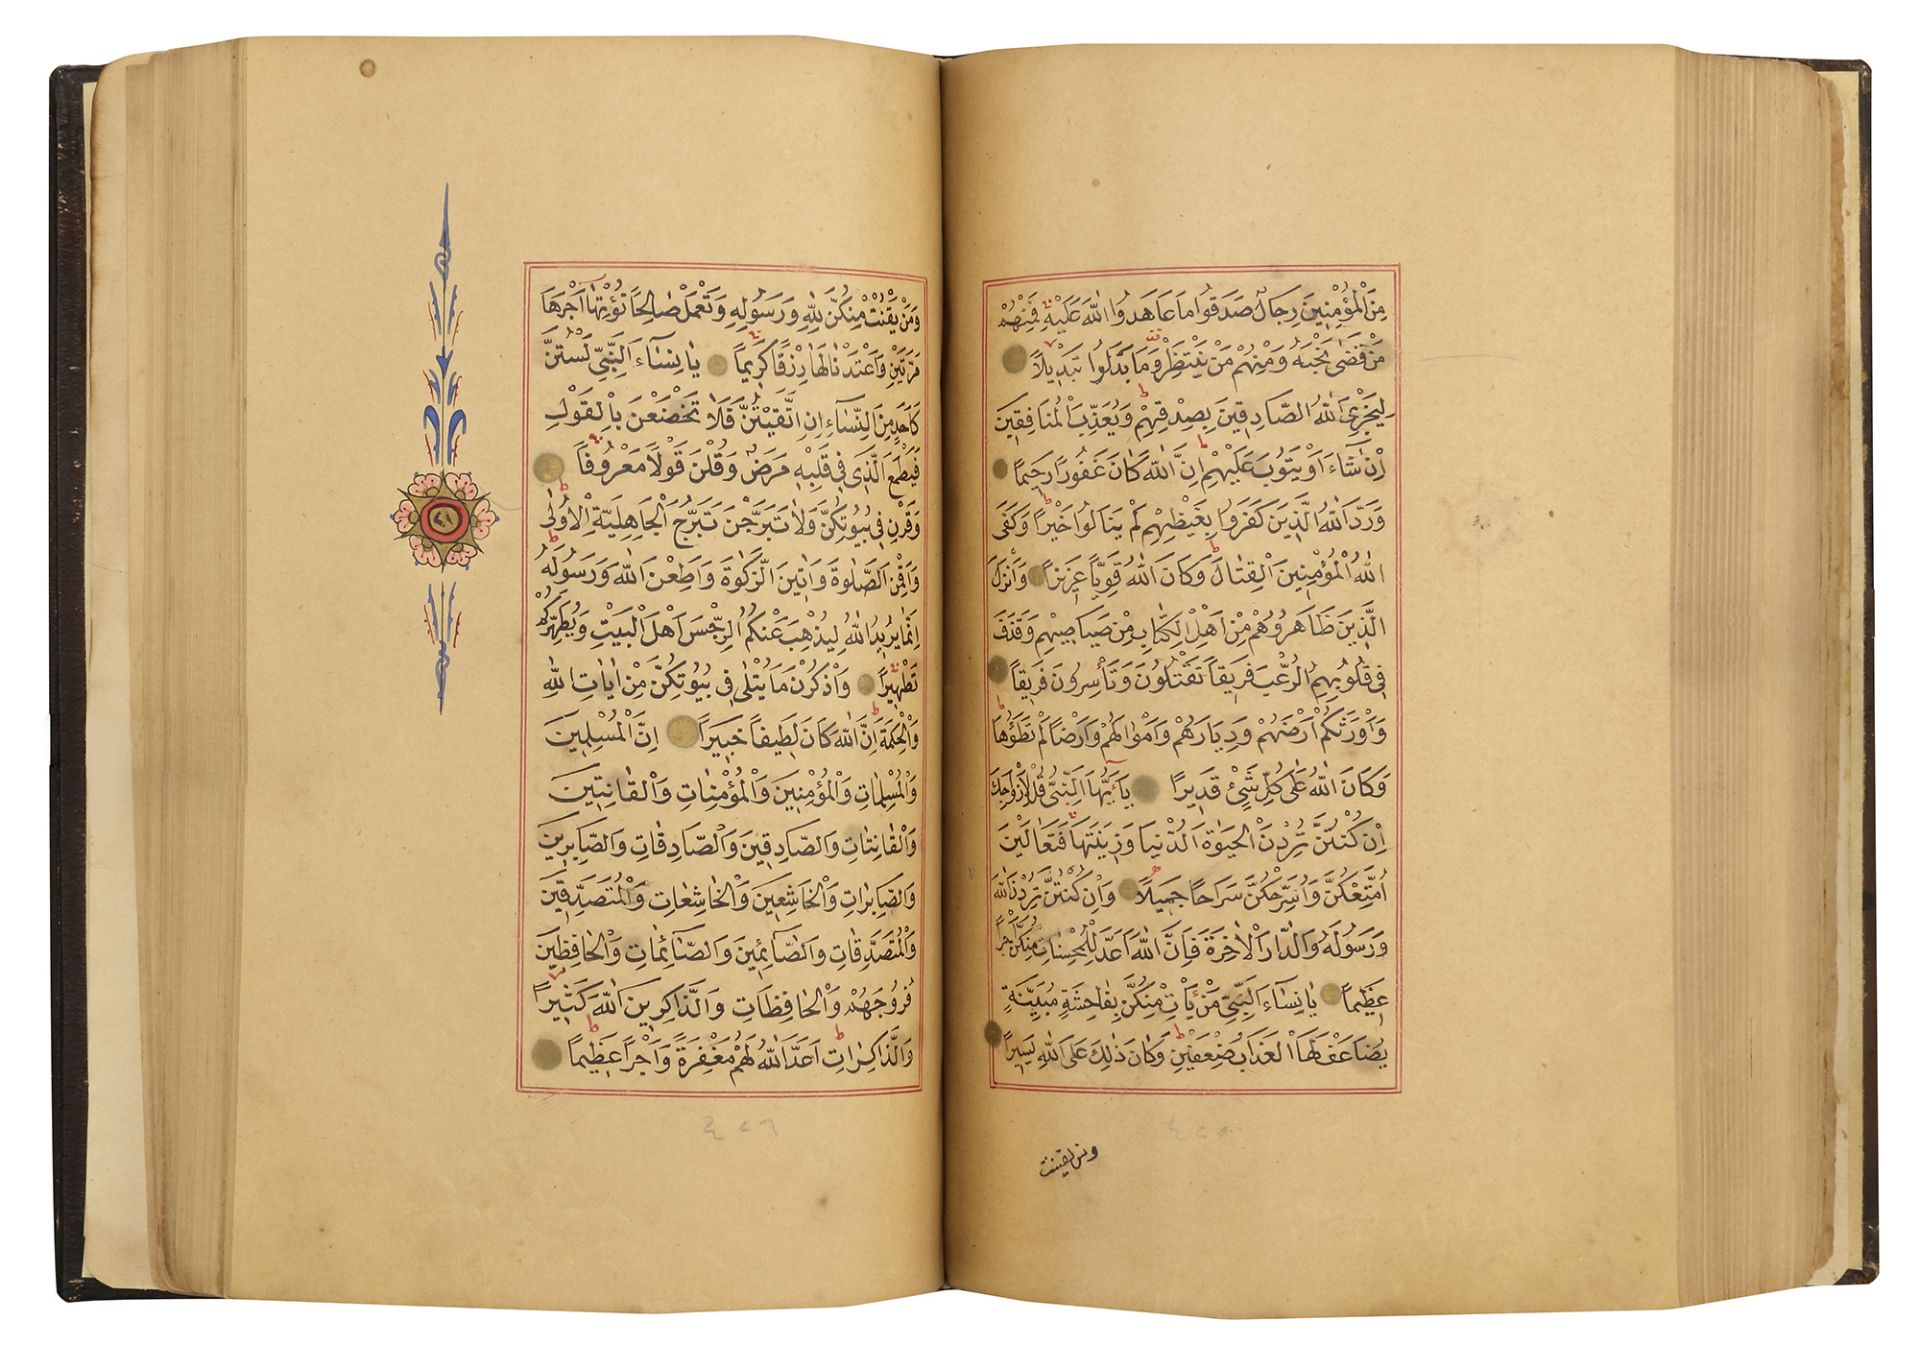 A FINE OTTOMAN QURAN, TURKEY, EDIRNE, WRITTEN BY HUSSEIN AL-HUSNA IBN AHMED AL-ADRUNI, DATED 1287 AH - Bild 5 aus 8